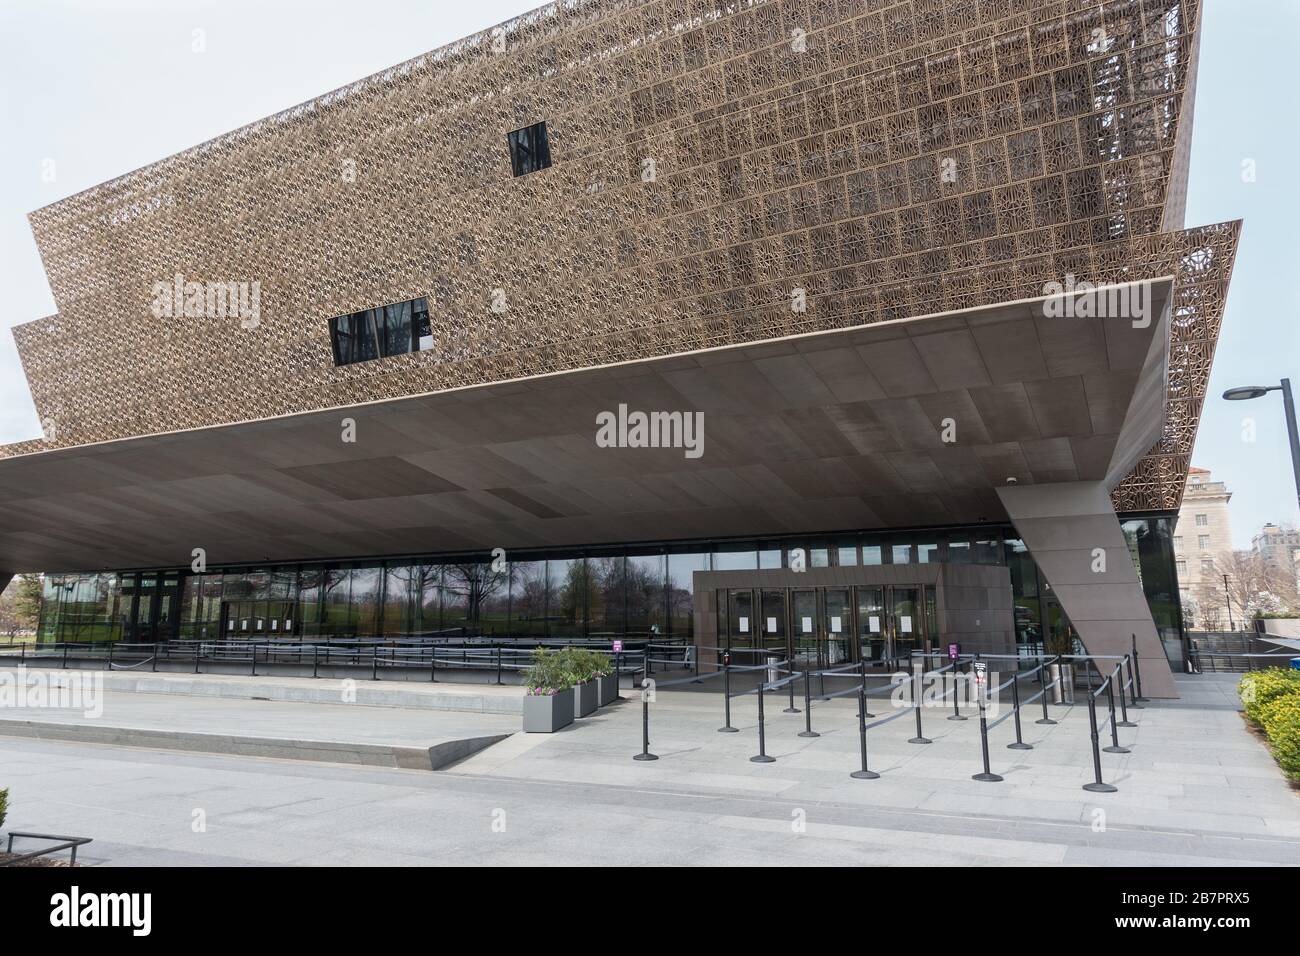 Normalmente abarrotado de turistas, la entrada al Museo de Historia y Cultura Afroamericana en Washington, DC está desierta, ya que todos los museos estaban cerrados por precauciones contra el coronavirus. 16 de marzo de 2020. Foto de stock